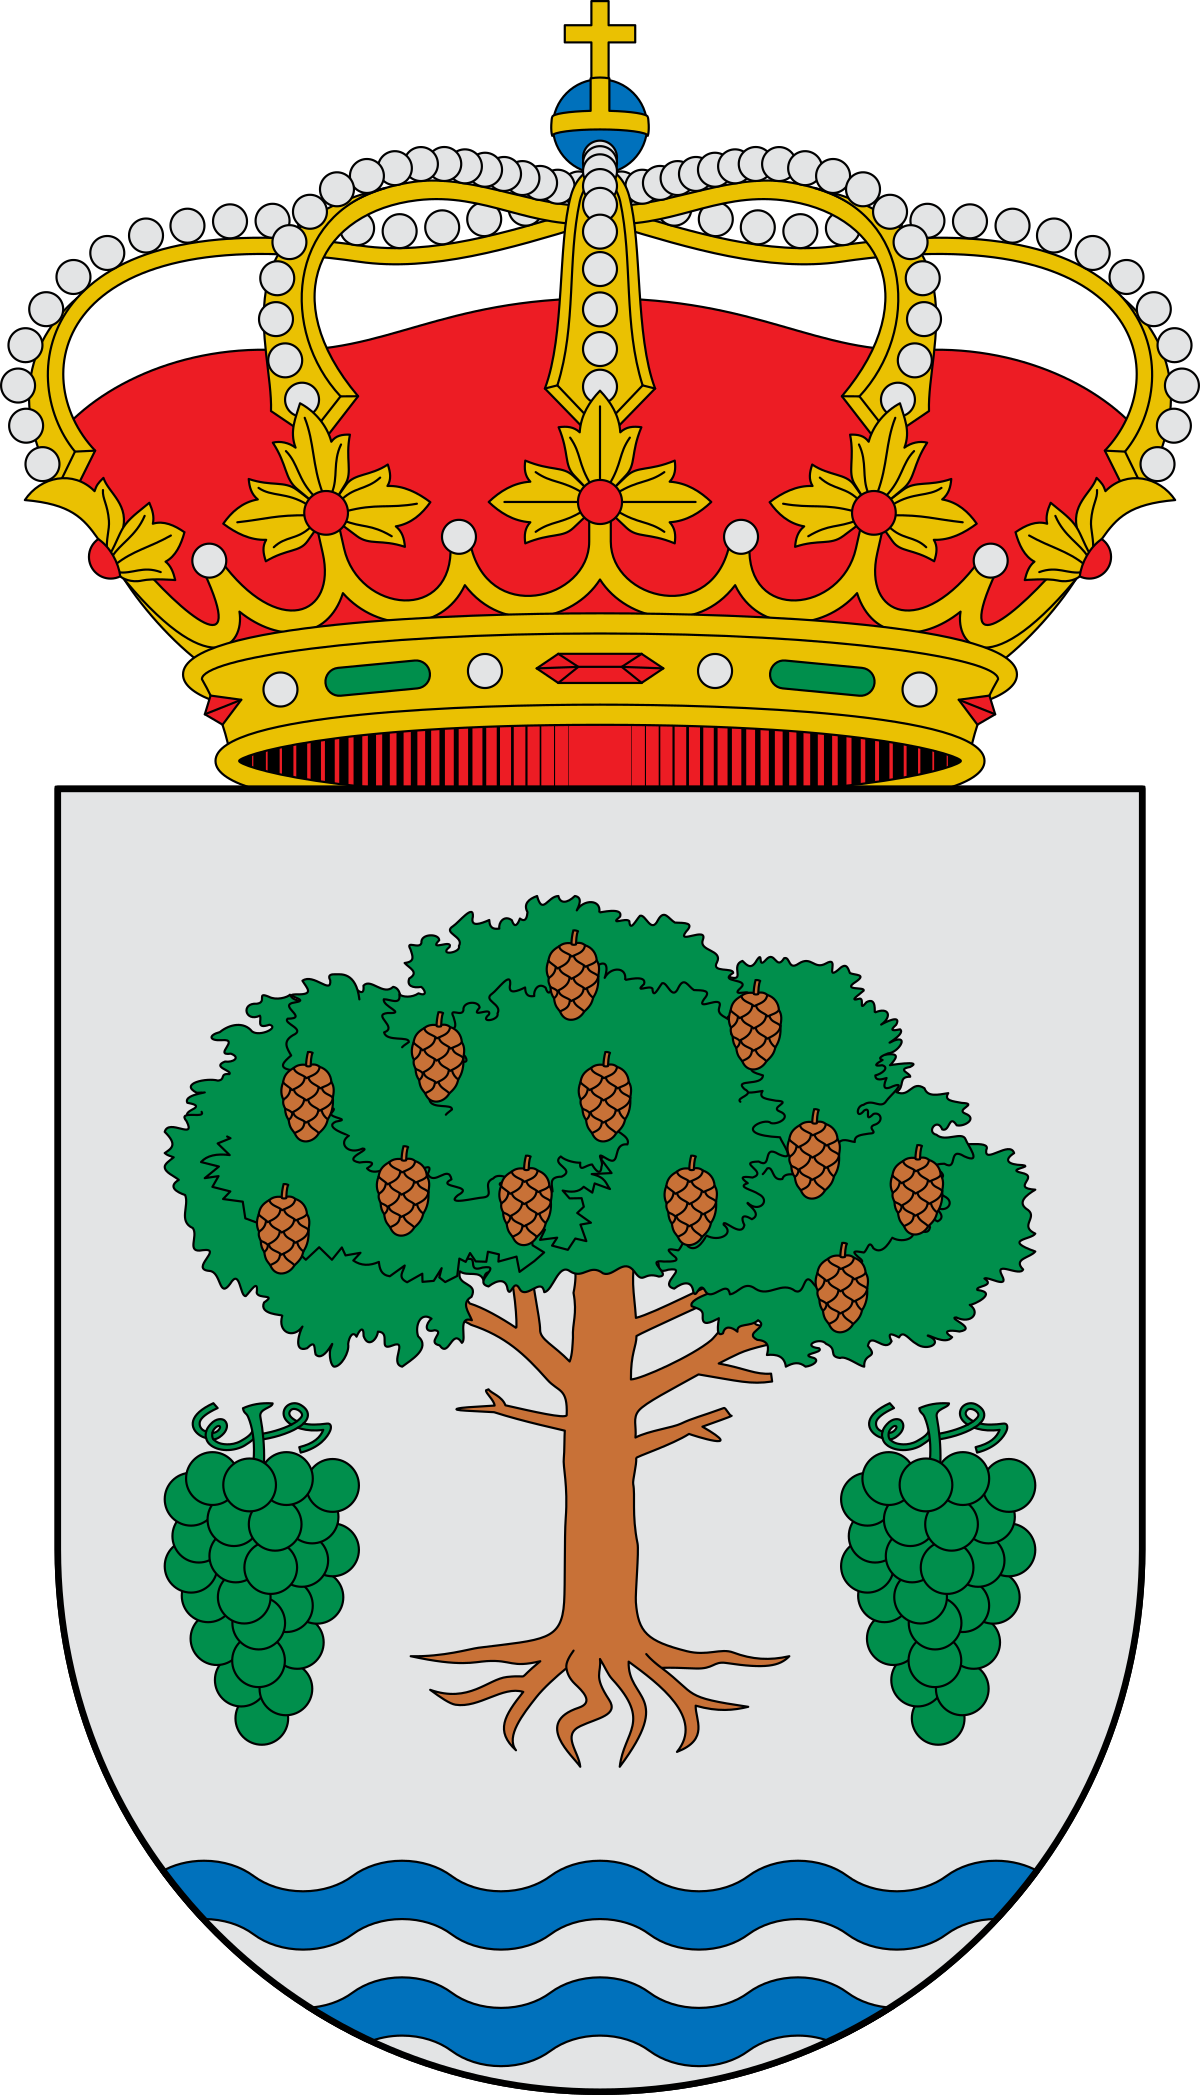 Escudo_de_Meaño_(Pontevedra)